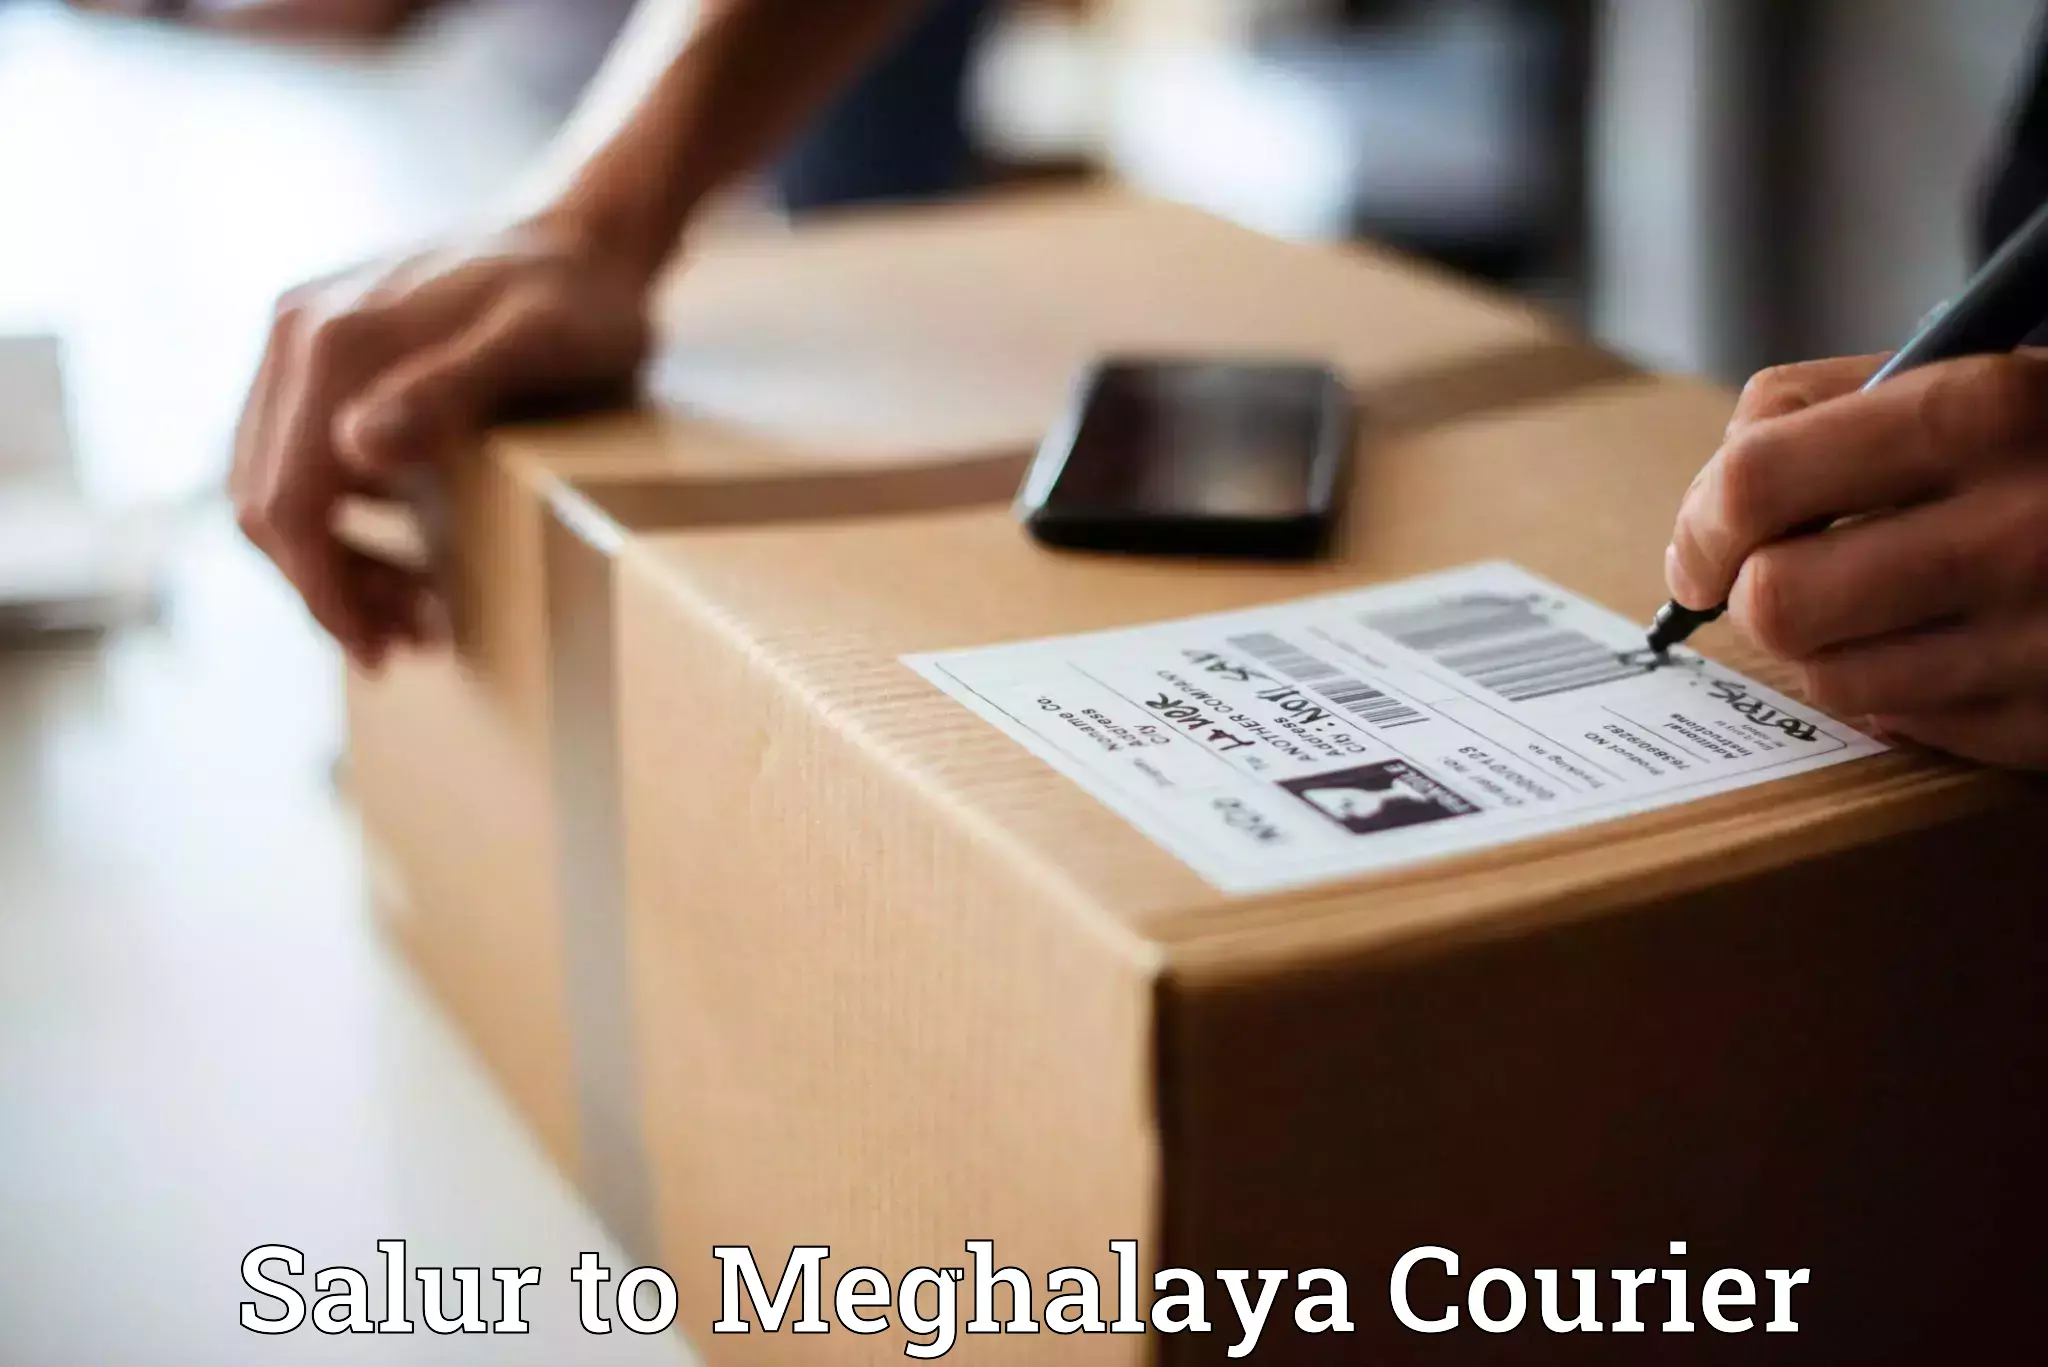 Express logistics service Salur to Meghalaya